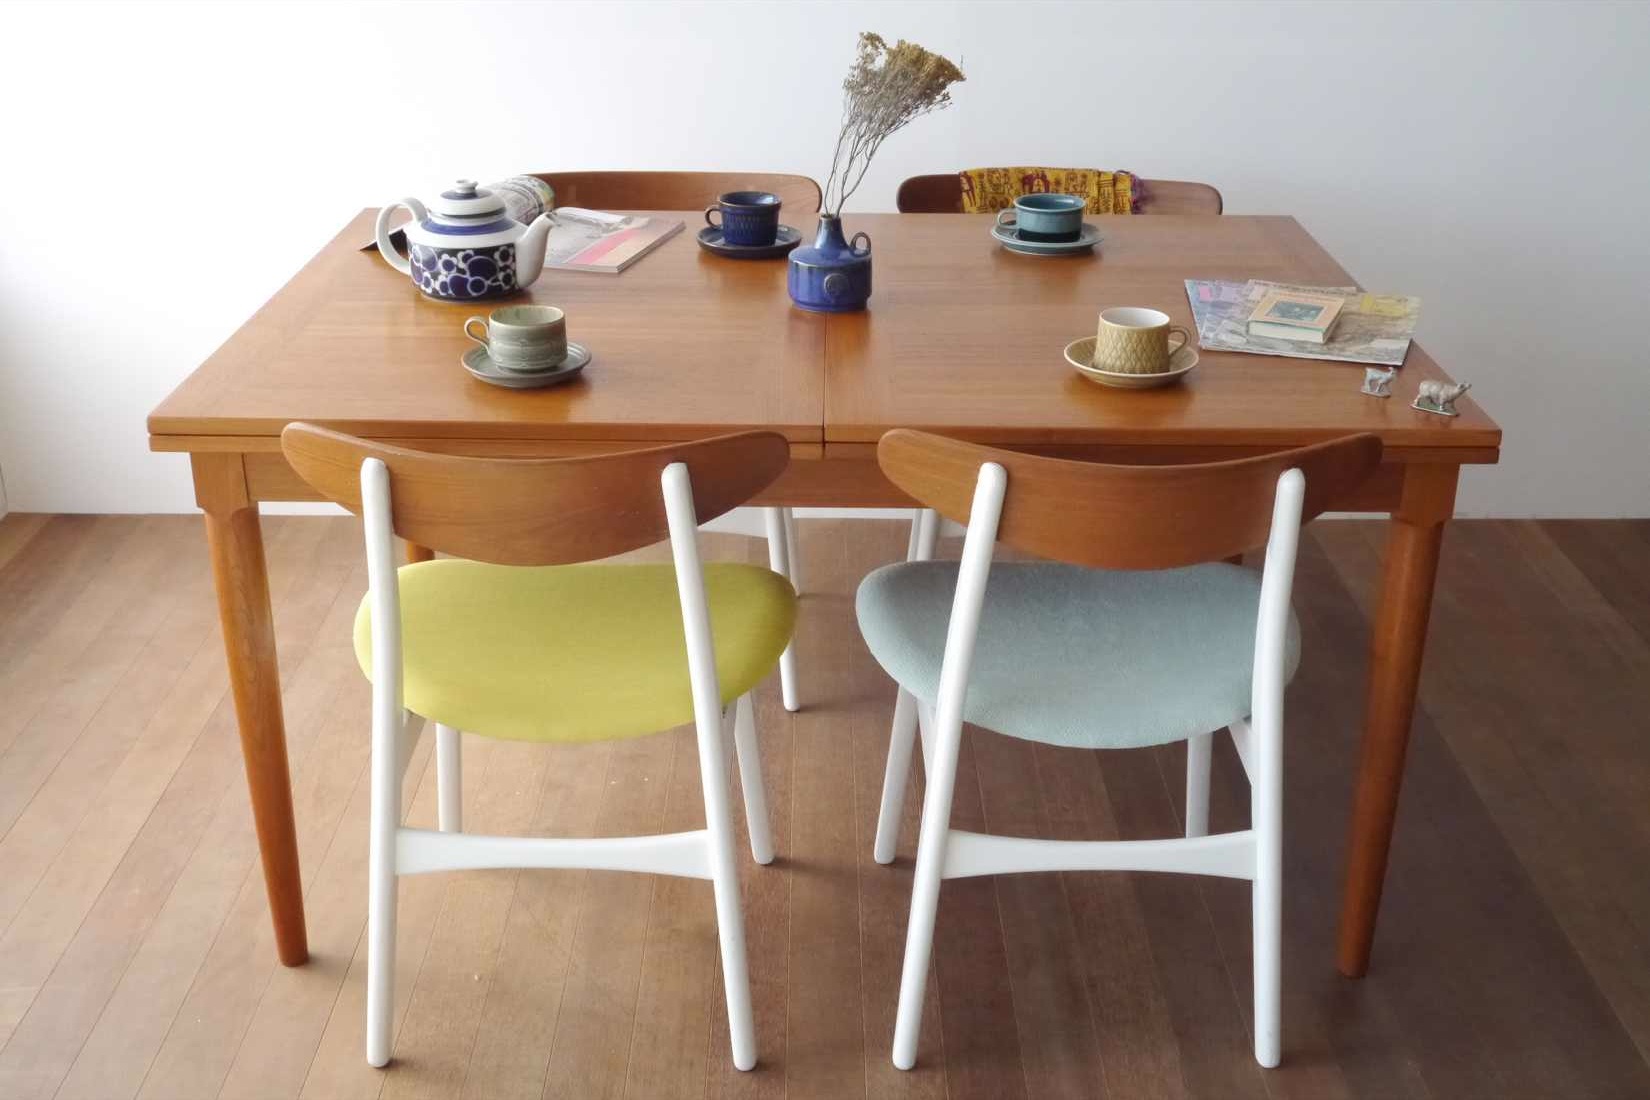 ビンテージ北欧家具のダイニングテーブルの選び方 7つのポイント - 北欧家具tanukiのブログ